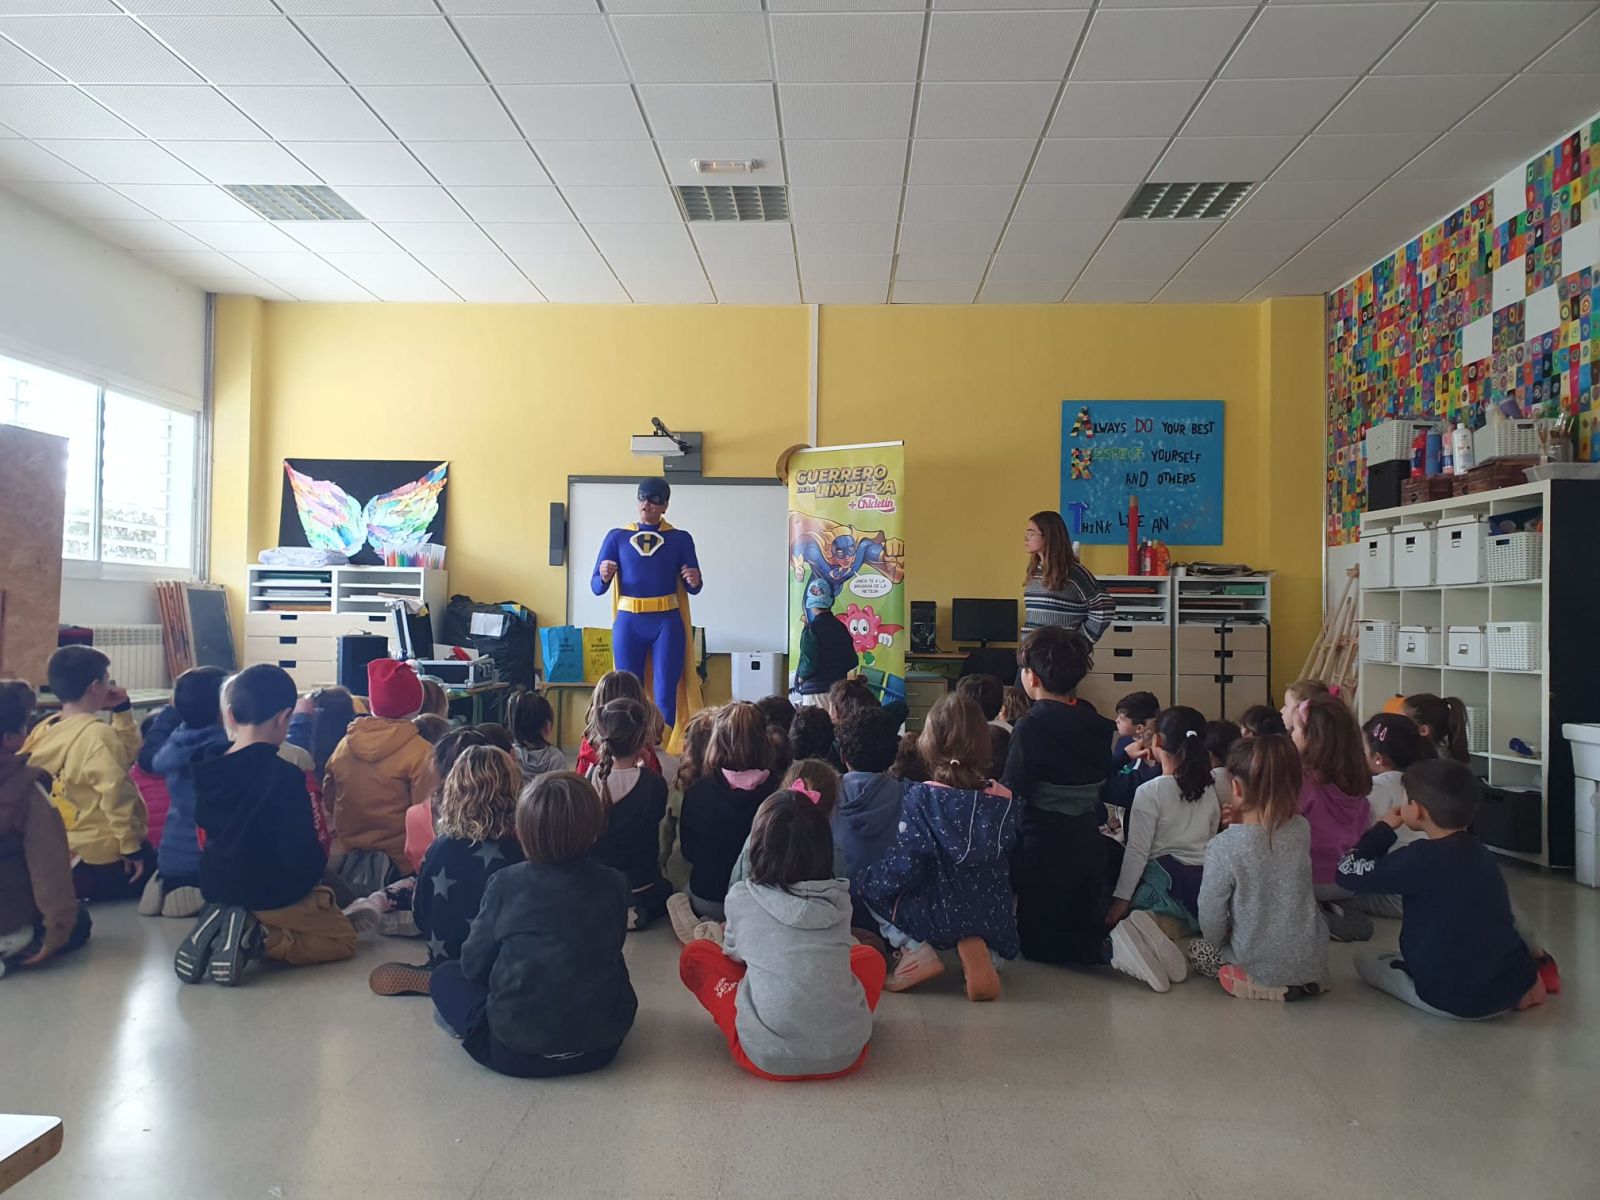 600 alumnos de Infantil y Primaria de los públicos de Santa Eulària des Riu reciben al Guerrero de la Limpieza